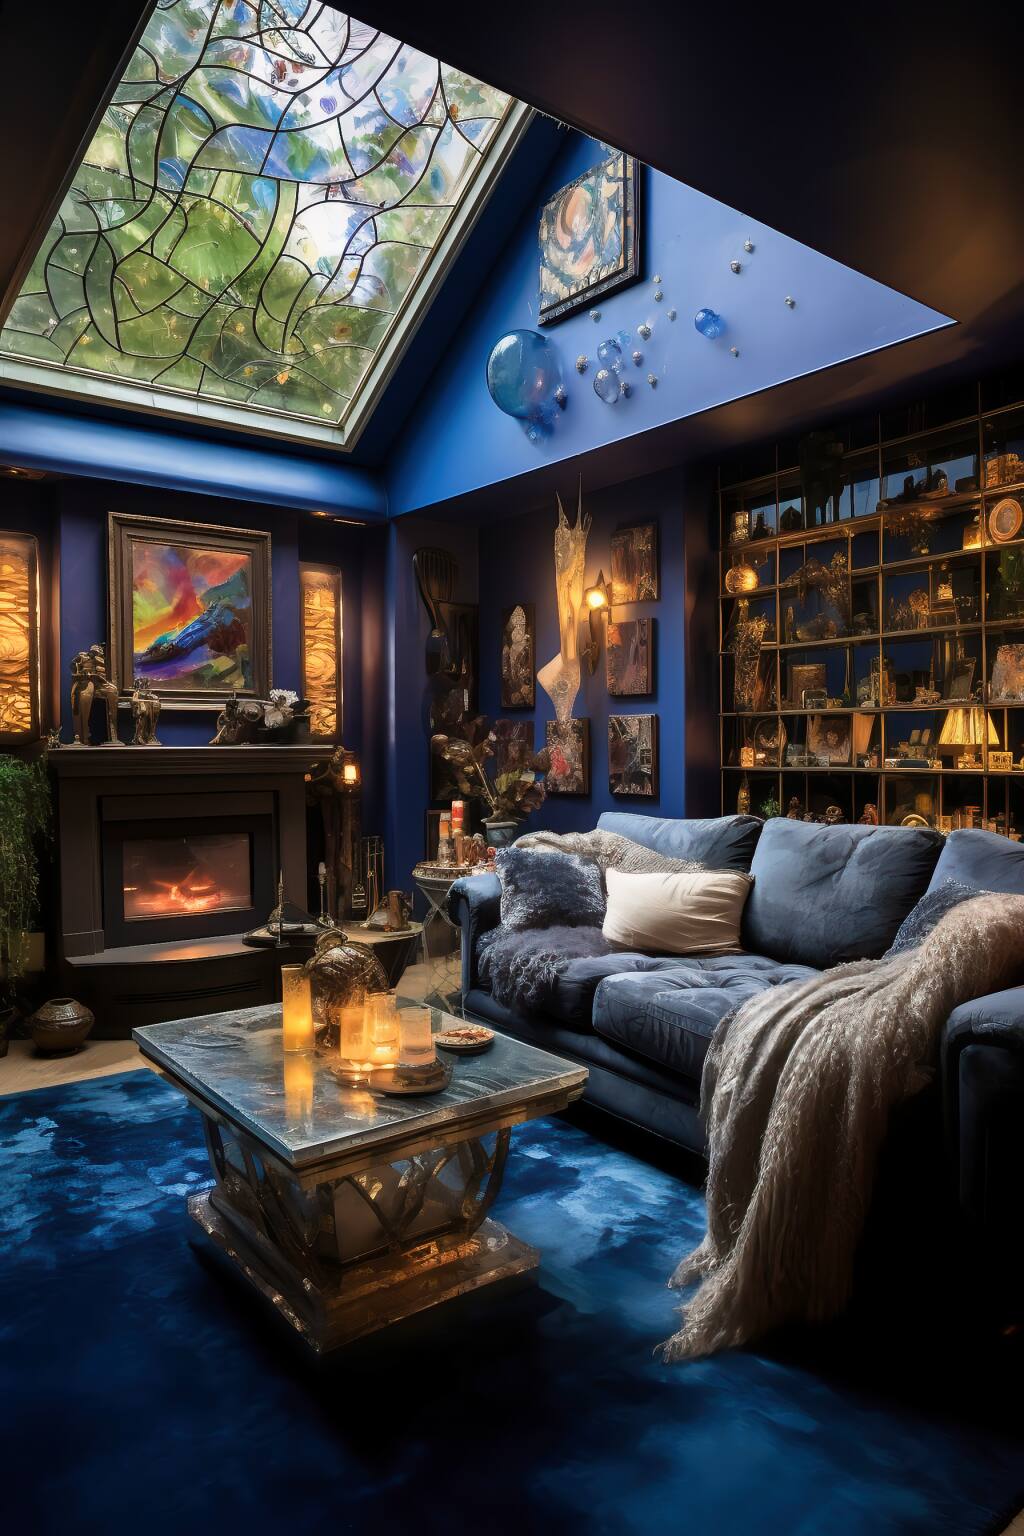 Raffiniertes Bohème-Wohnzimmer In Marineblau Und Silber Mit Einem Samtsofa, Einem Couchtisch Aus Glas Und Wandkunst Im Mondlicht.